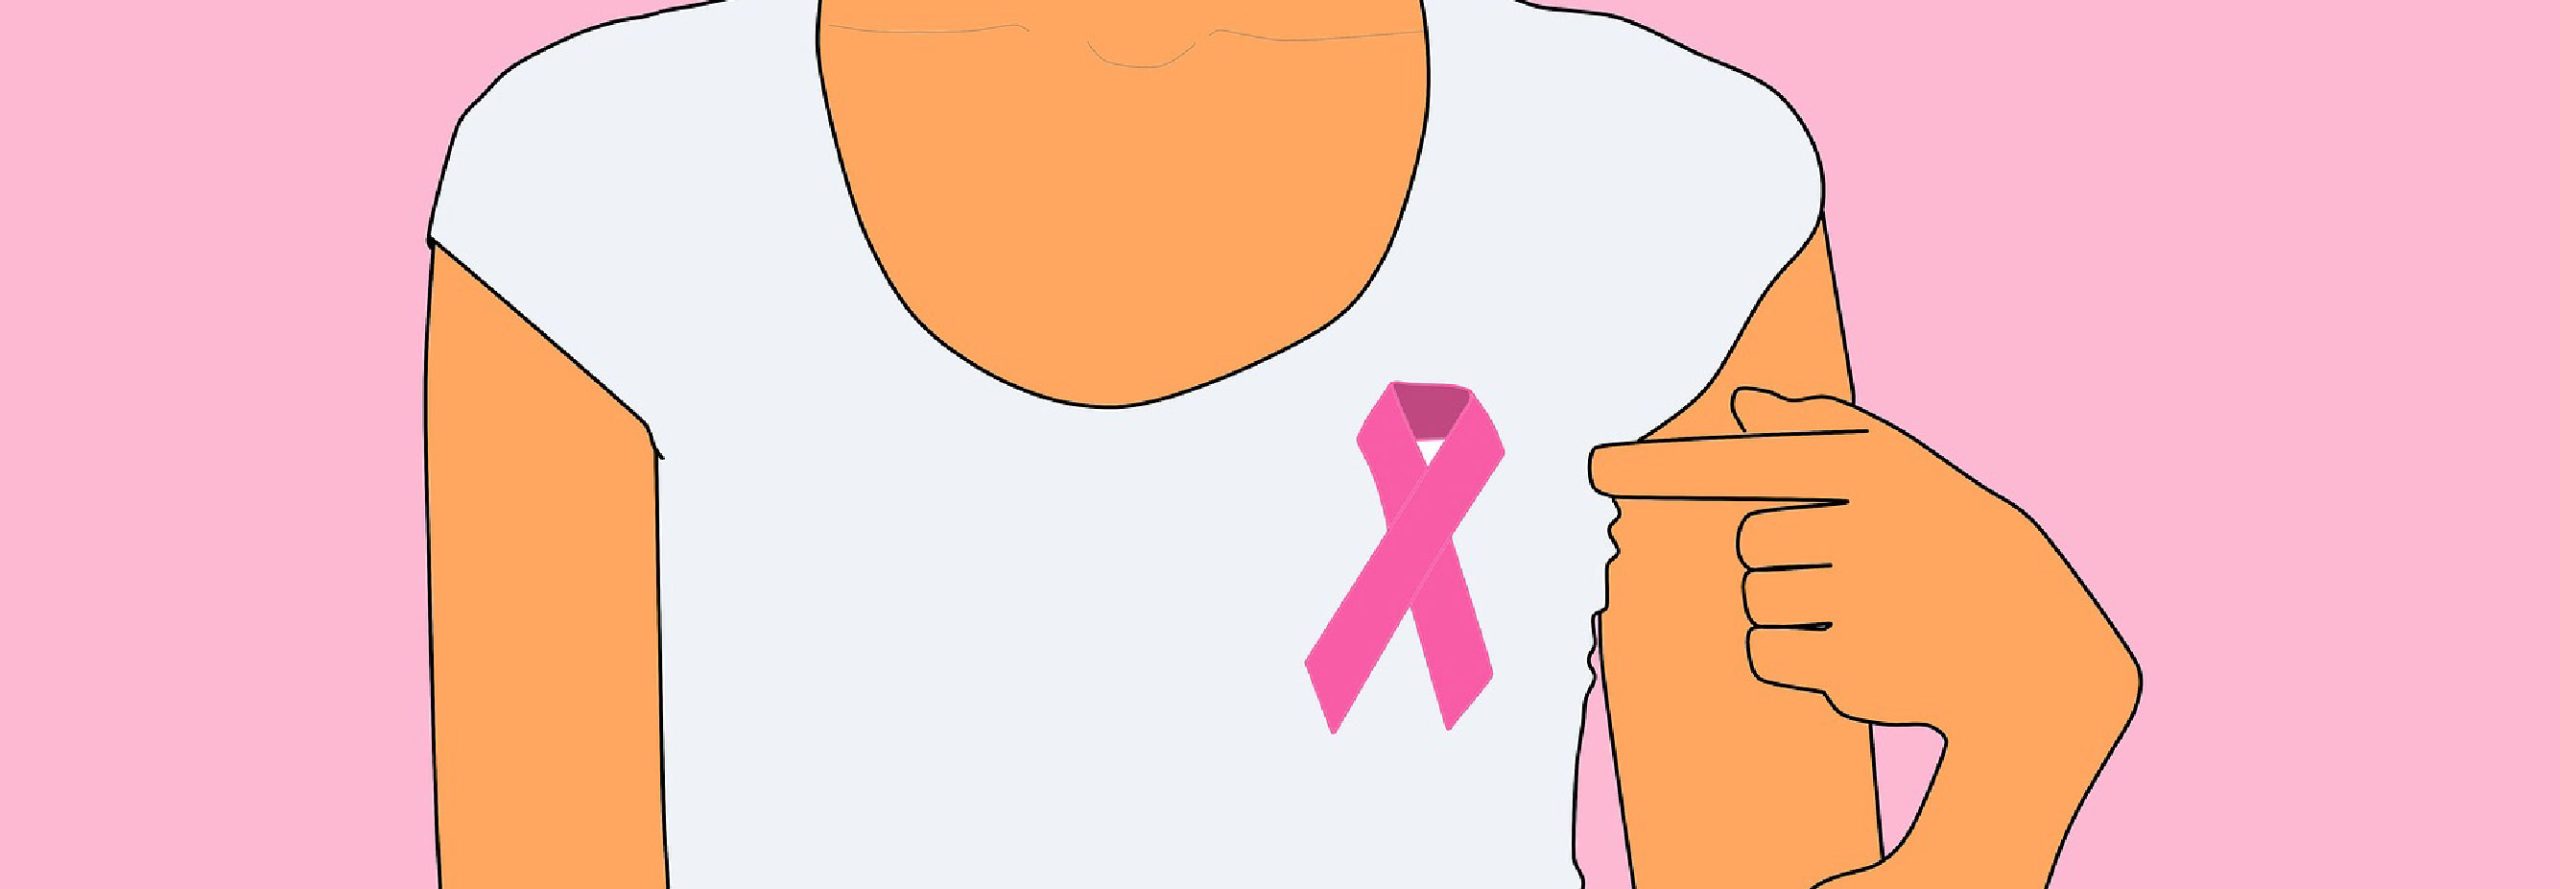 Image montrant le ruban rose, symbole de la lutte contre le cancer du sein pour illustrer les formations courtes du thème vasculaire et cicatrices.